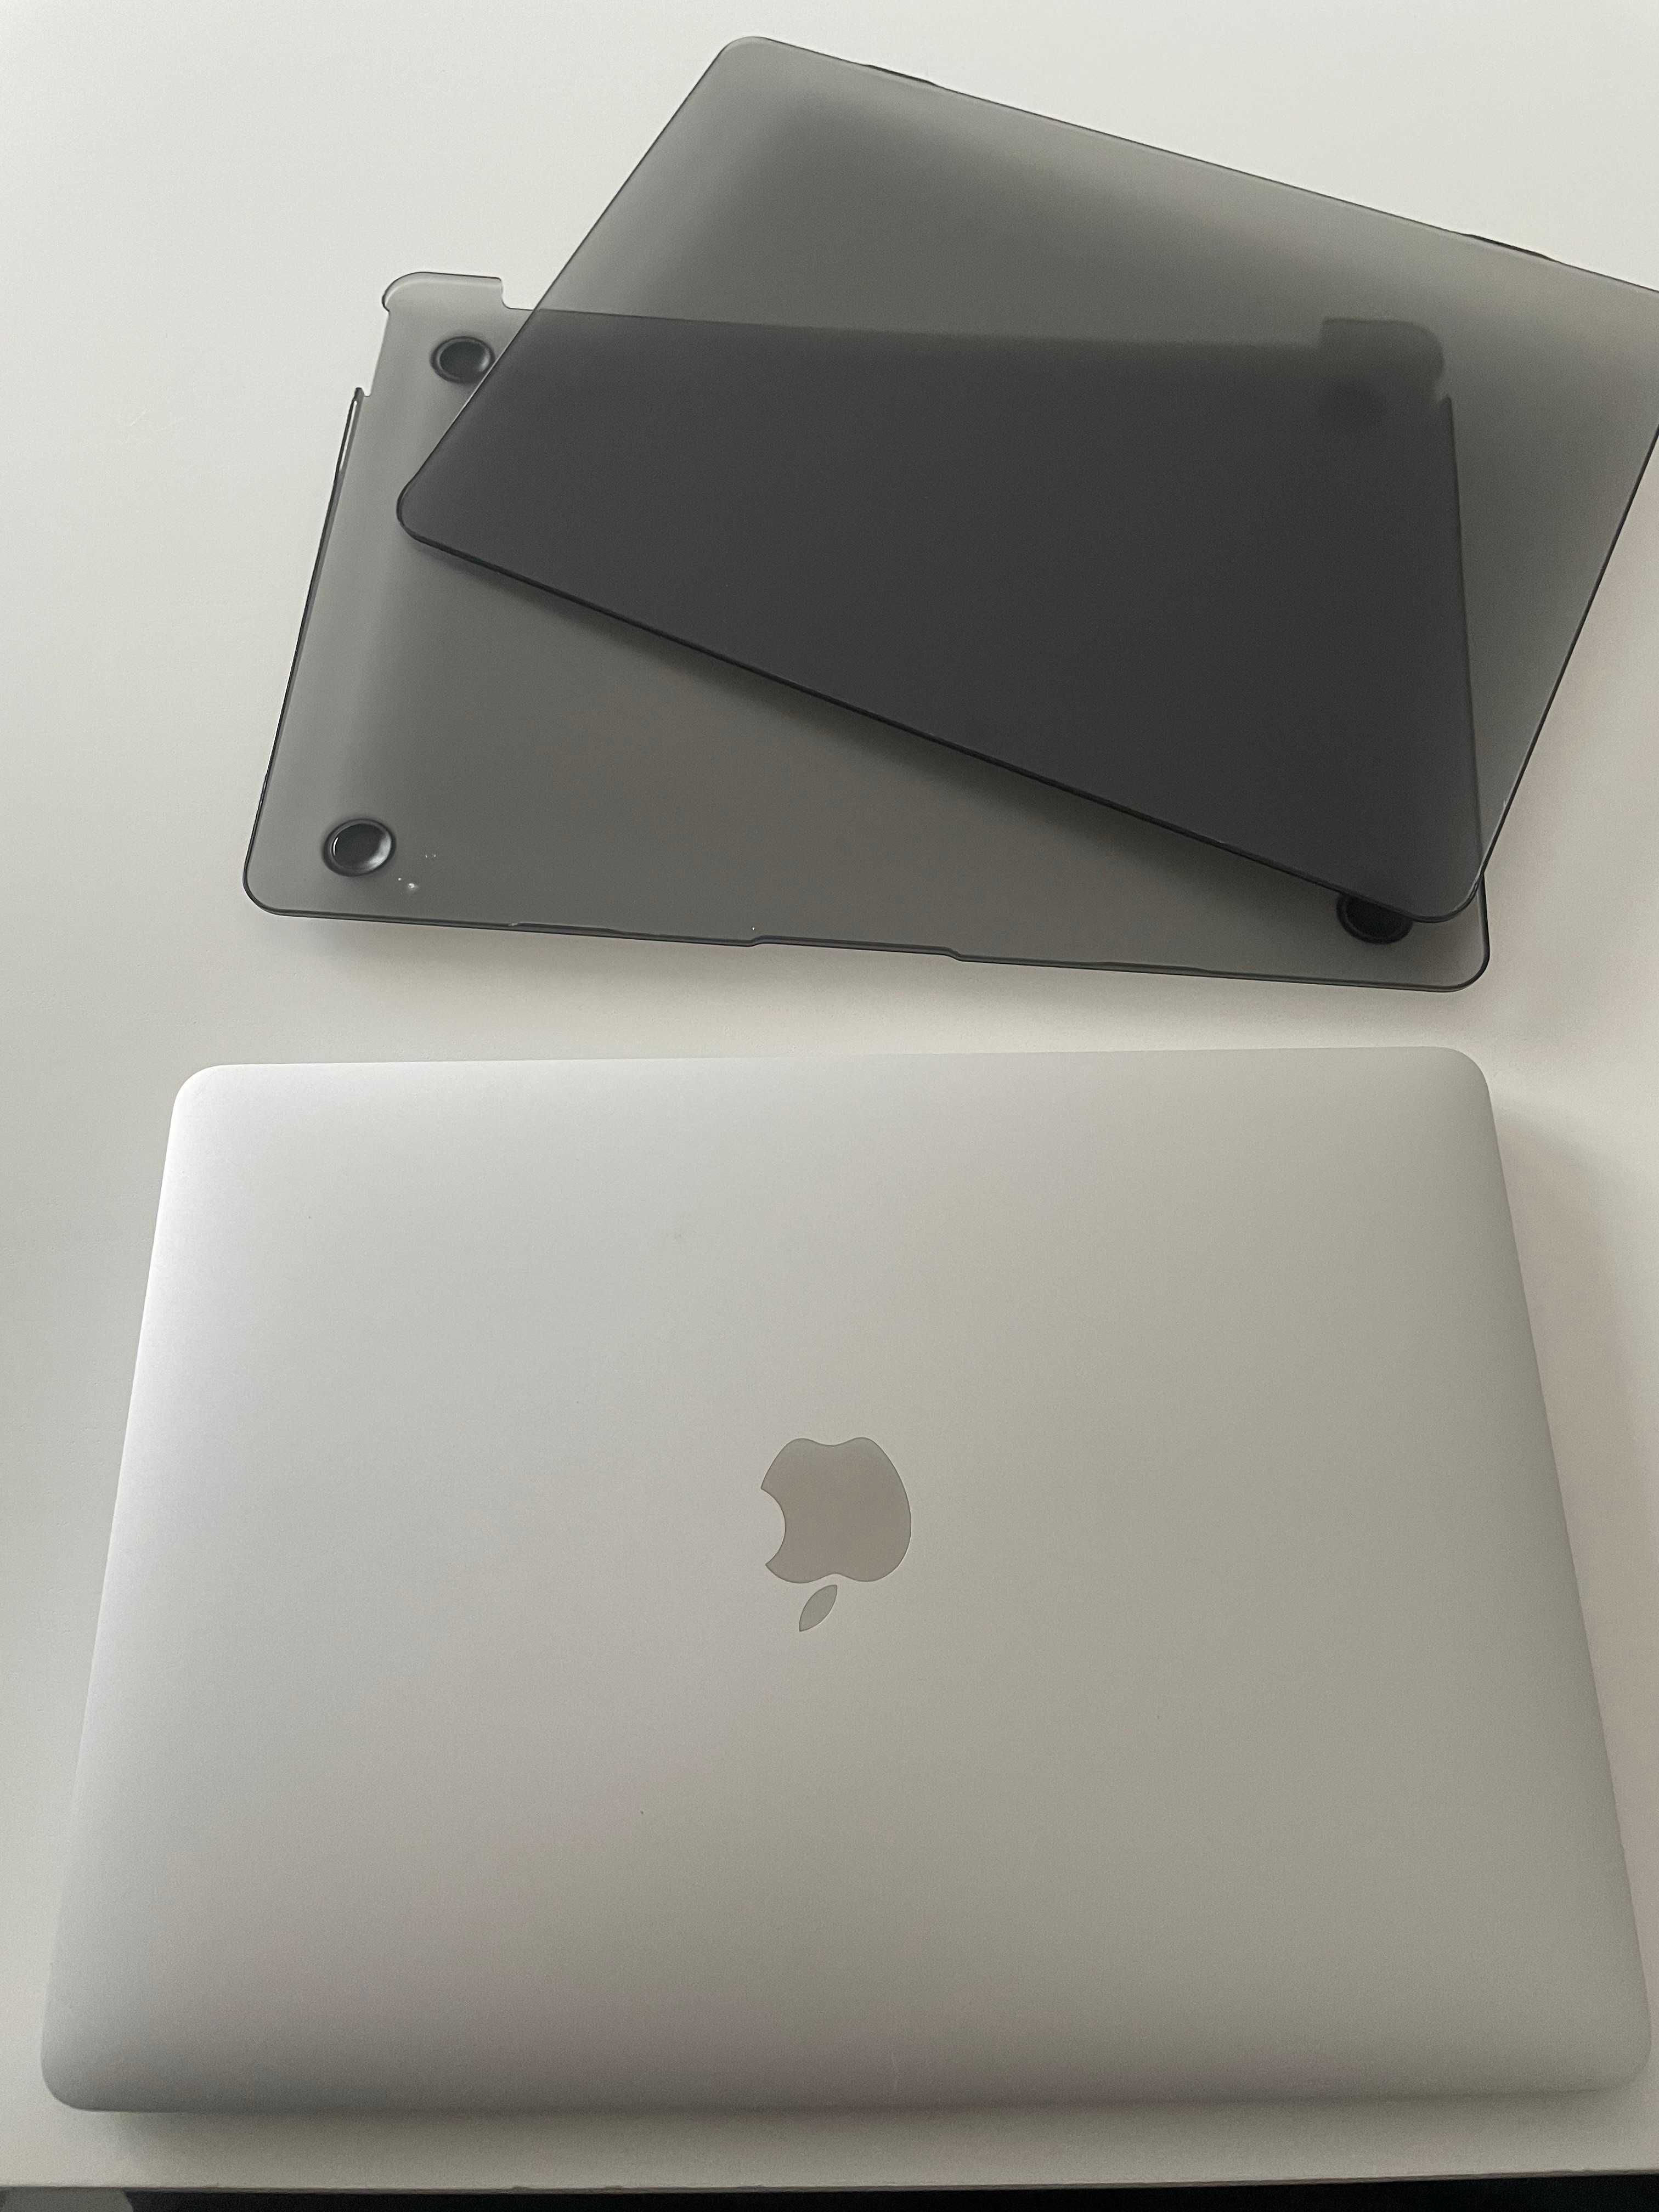 MacBook Air 13 (2020) - Como Novo!